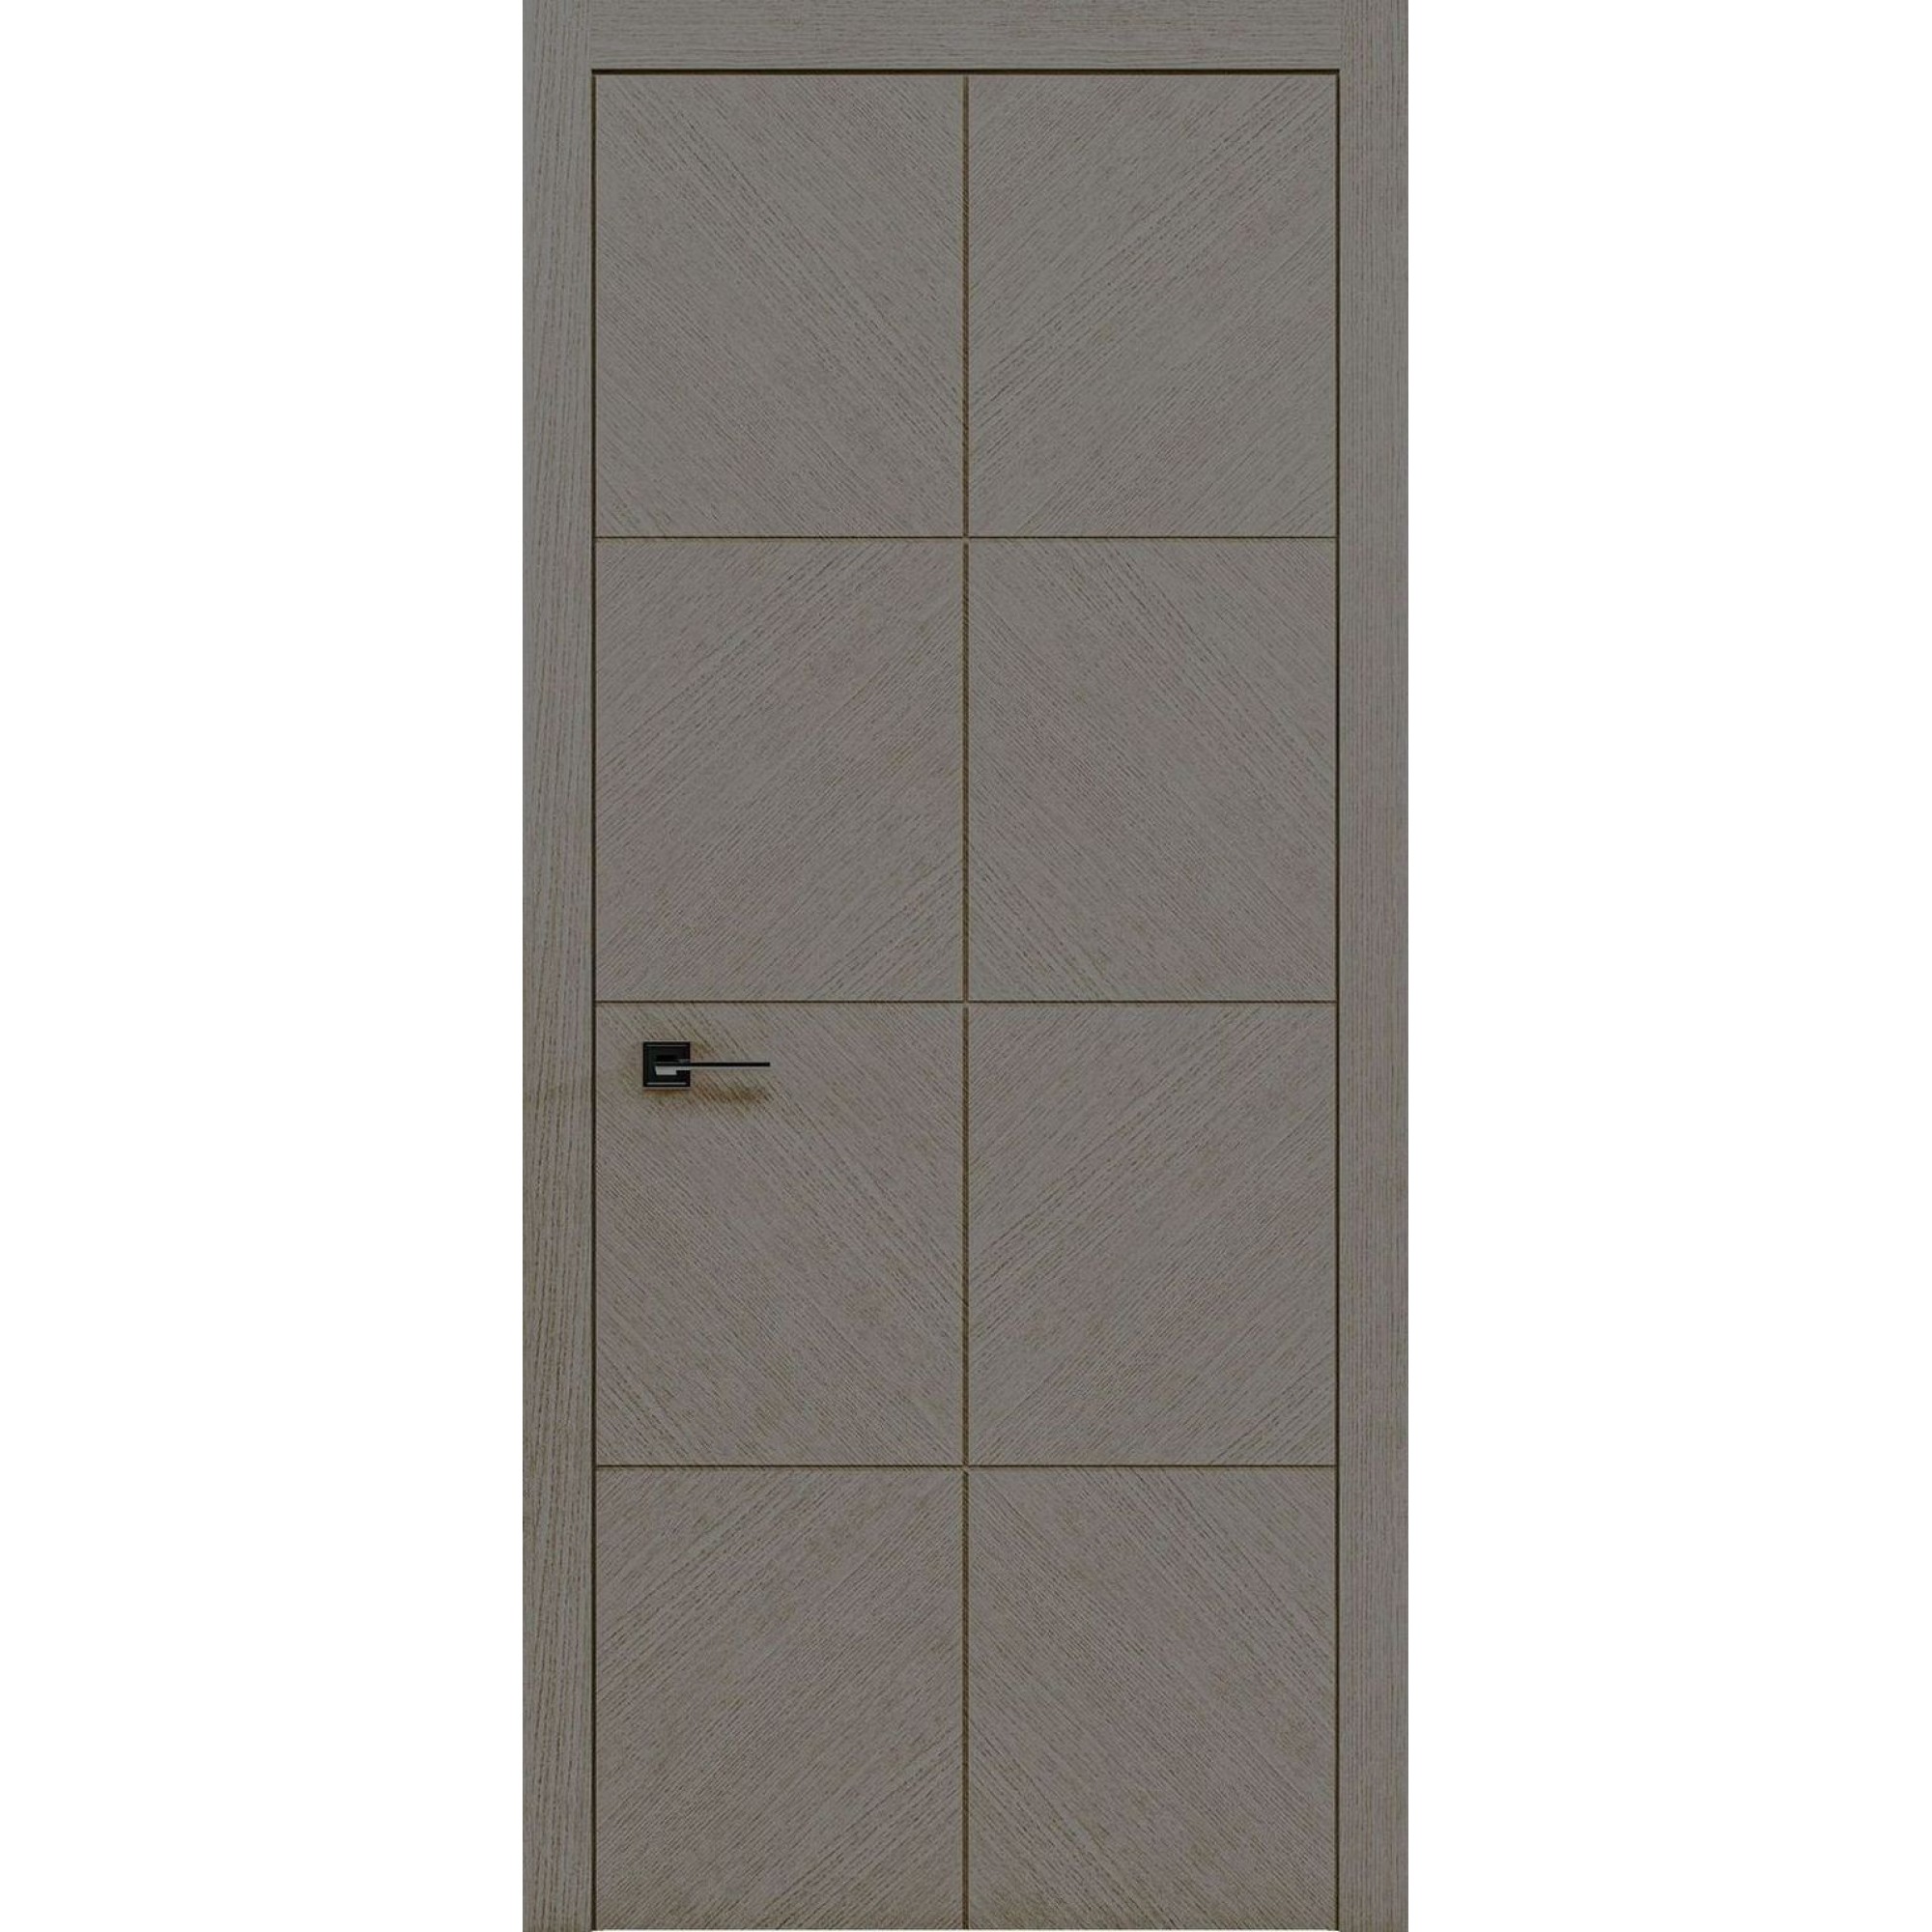 Шпонированные межкомнатные двери - Двери Rodos LIBERTA DOMINO 1 ALUM INSIDE только с алюминиевым контуром #1